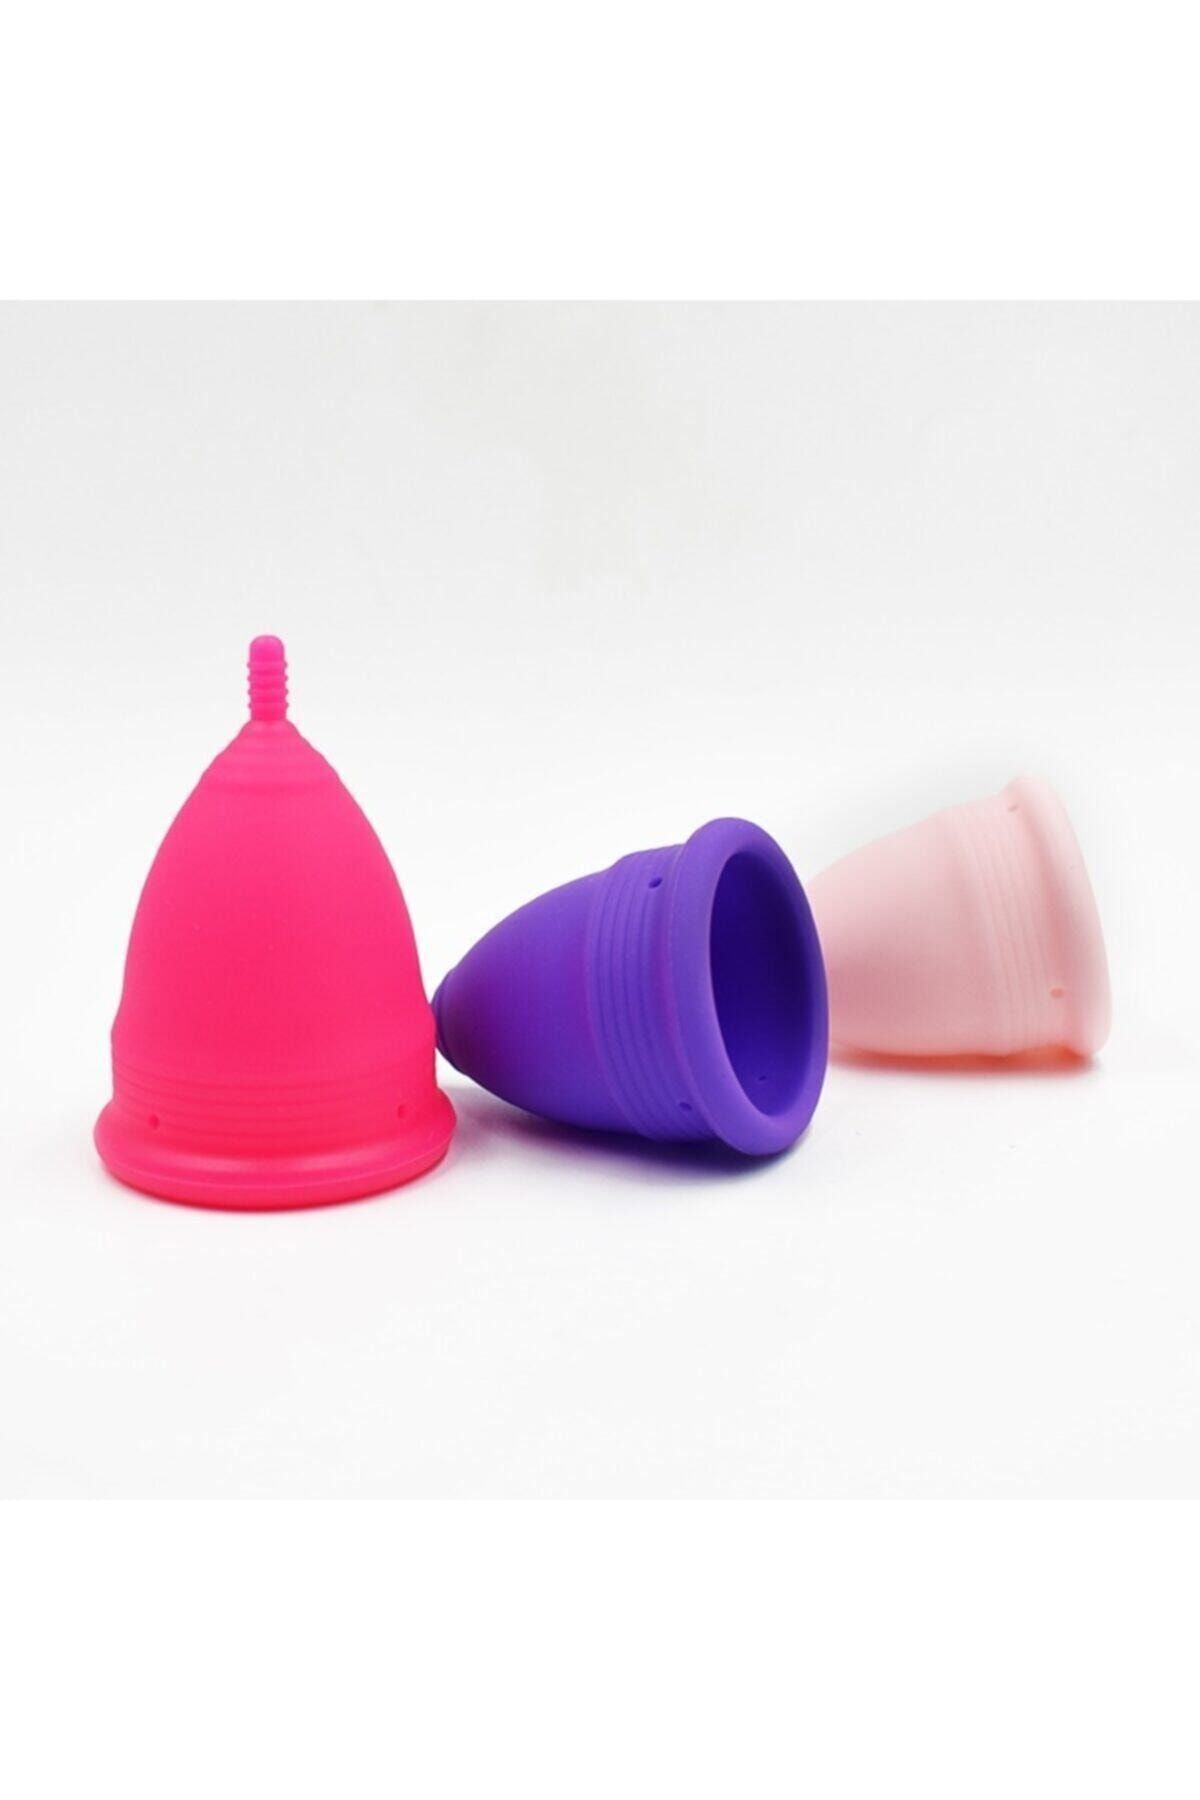 kybele Menstrual Kap (cup) - Adet Kabı Mor Renk L